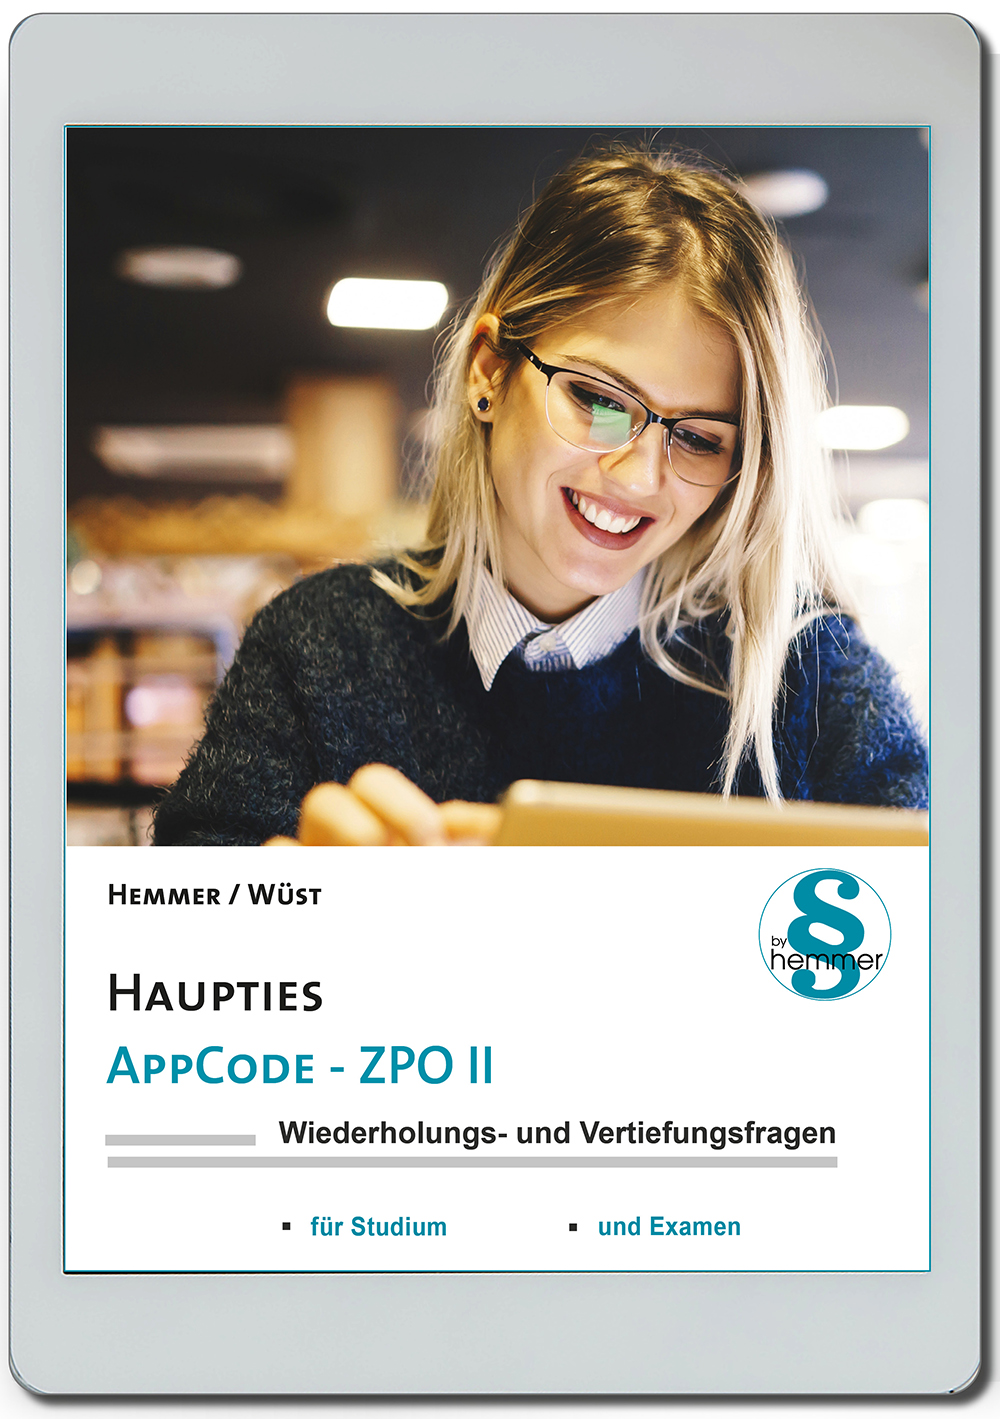 AppCode - haupties - Zivilprozessrecht II (ZPO)